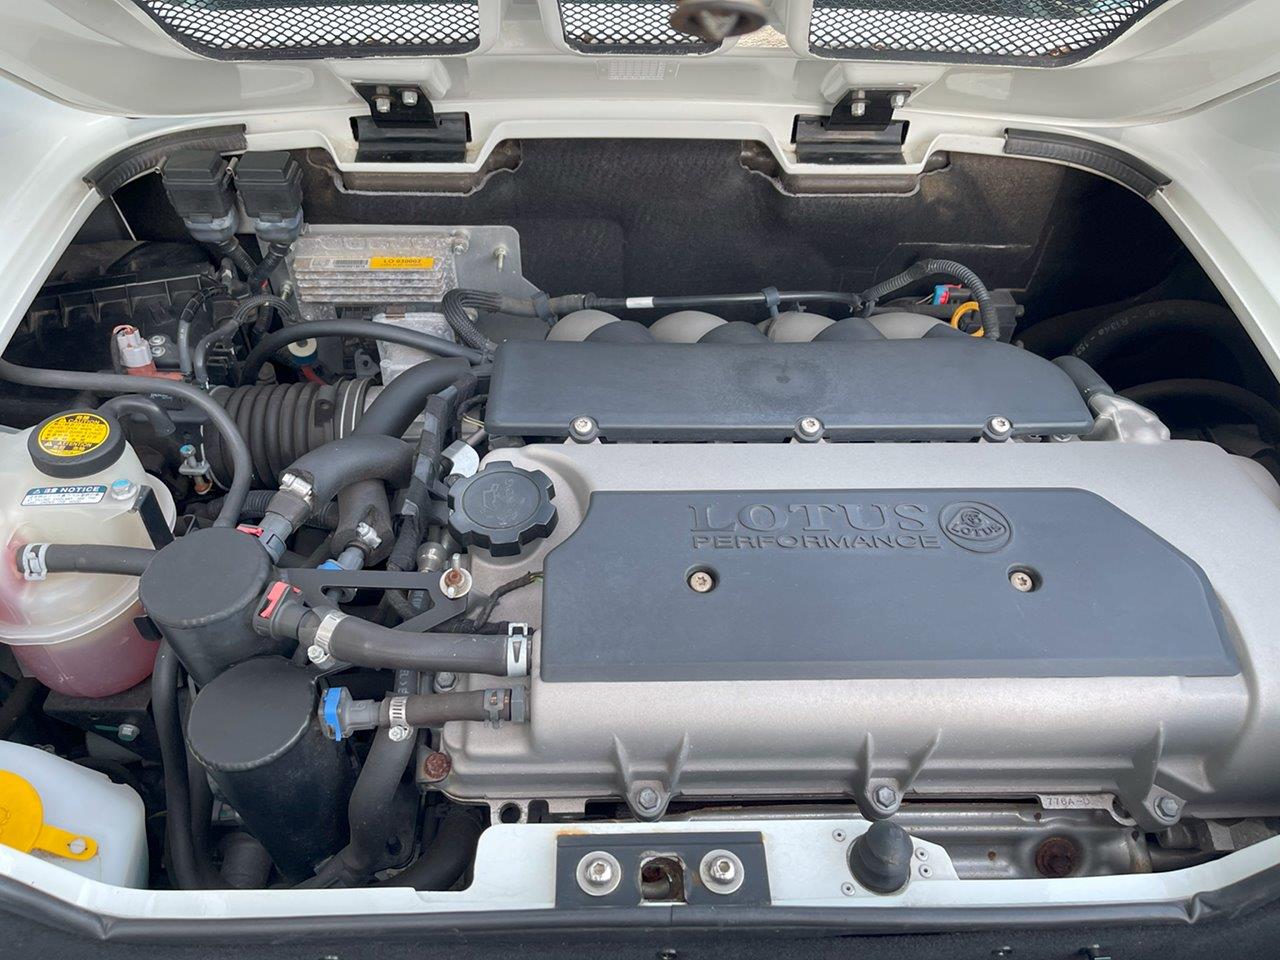 特選中古車 ロータス S3 エリーゼR 11年モデル アスペンホワイト